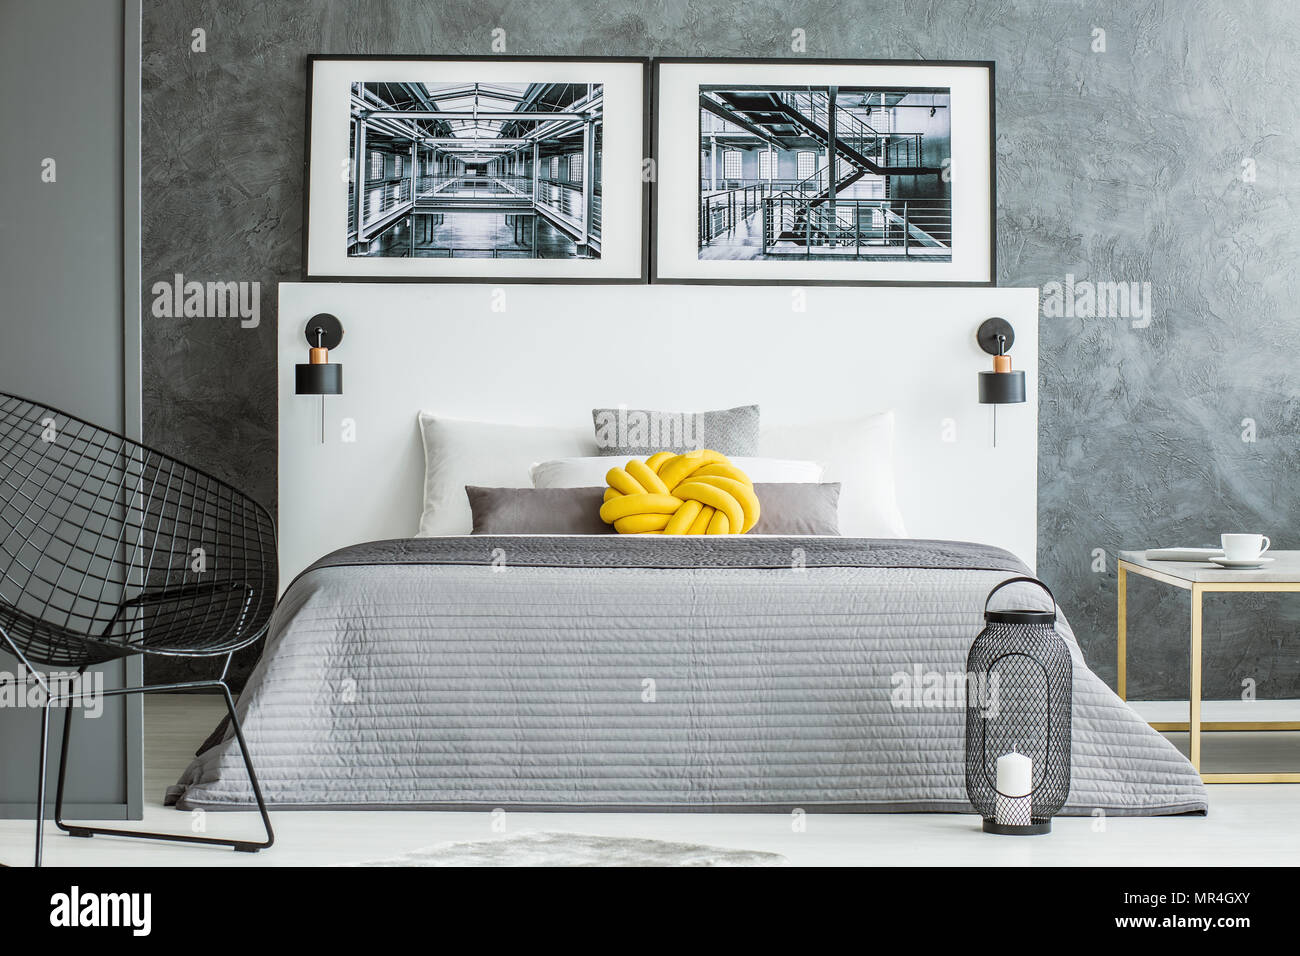 Gelbe Kissen auf grau Bett im Schlafzimmer Innenraum mit Sessel und Plakate  gegen Betonmauer Stockfotografie - Alamy